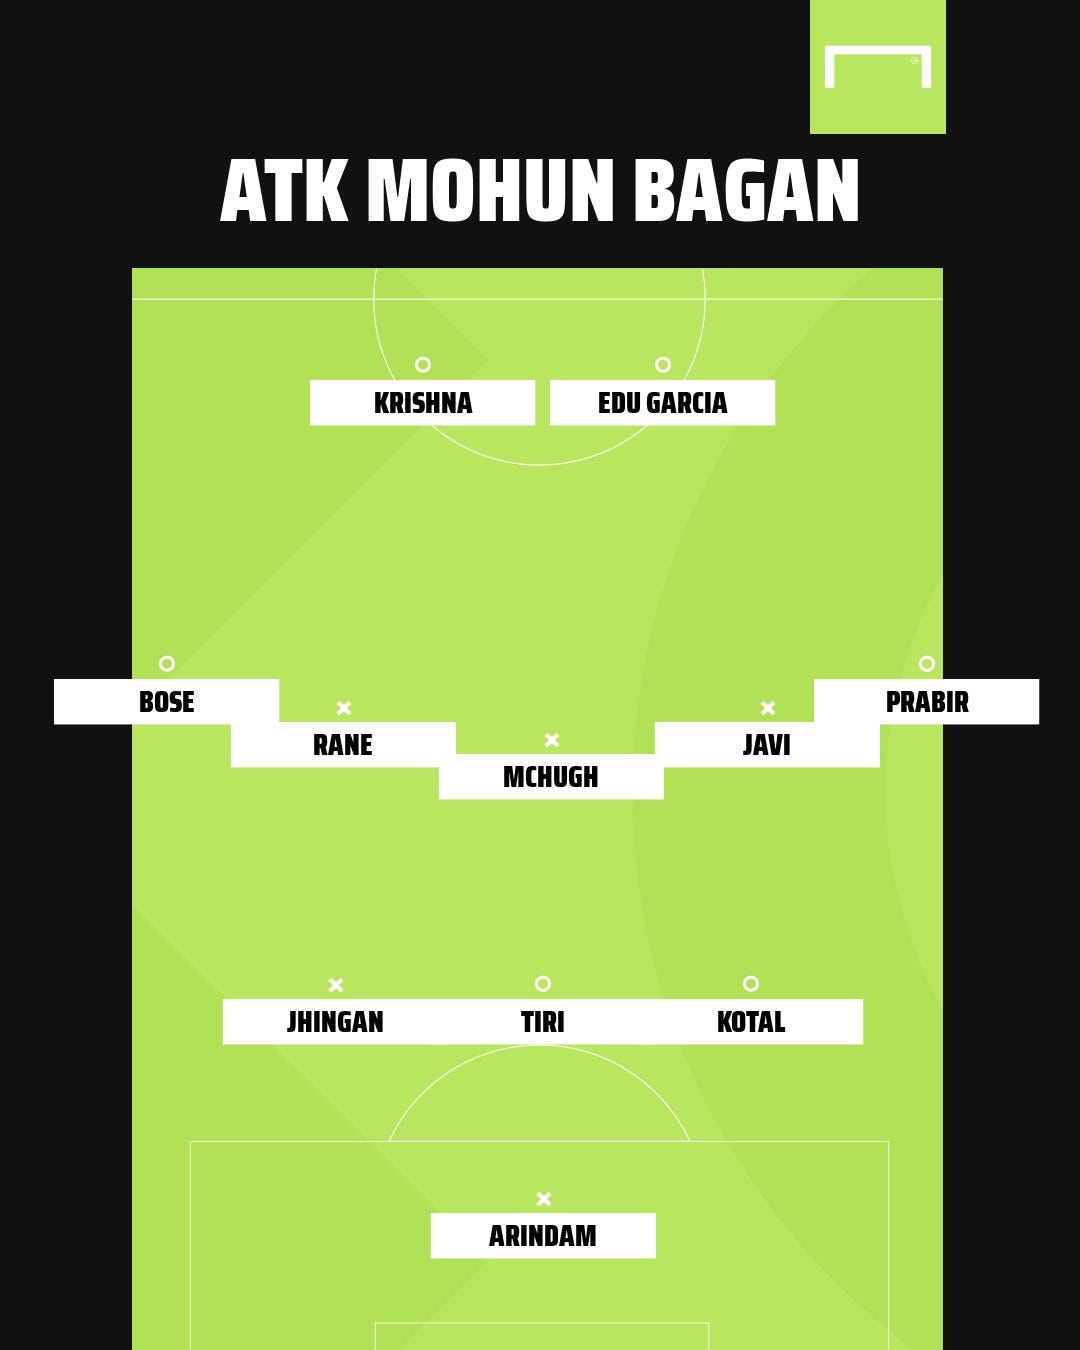 ATK Mohun Bagan possible XI